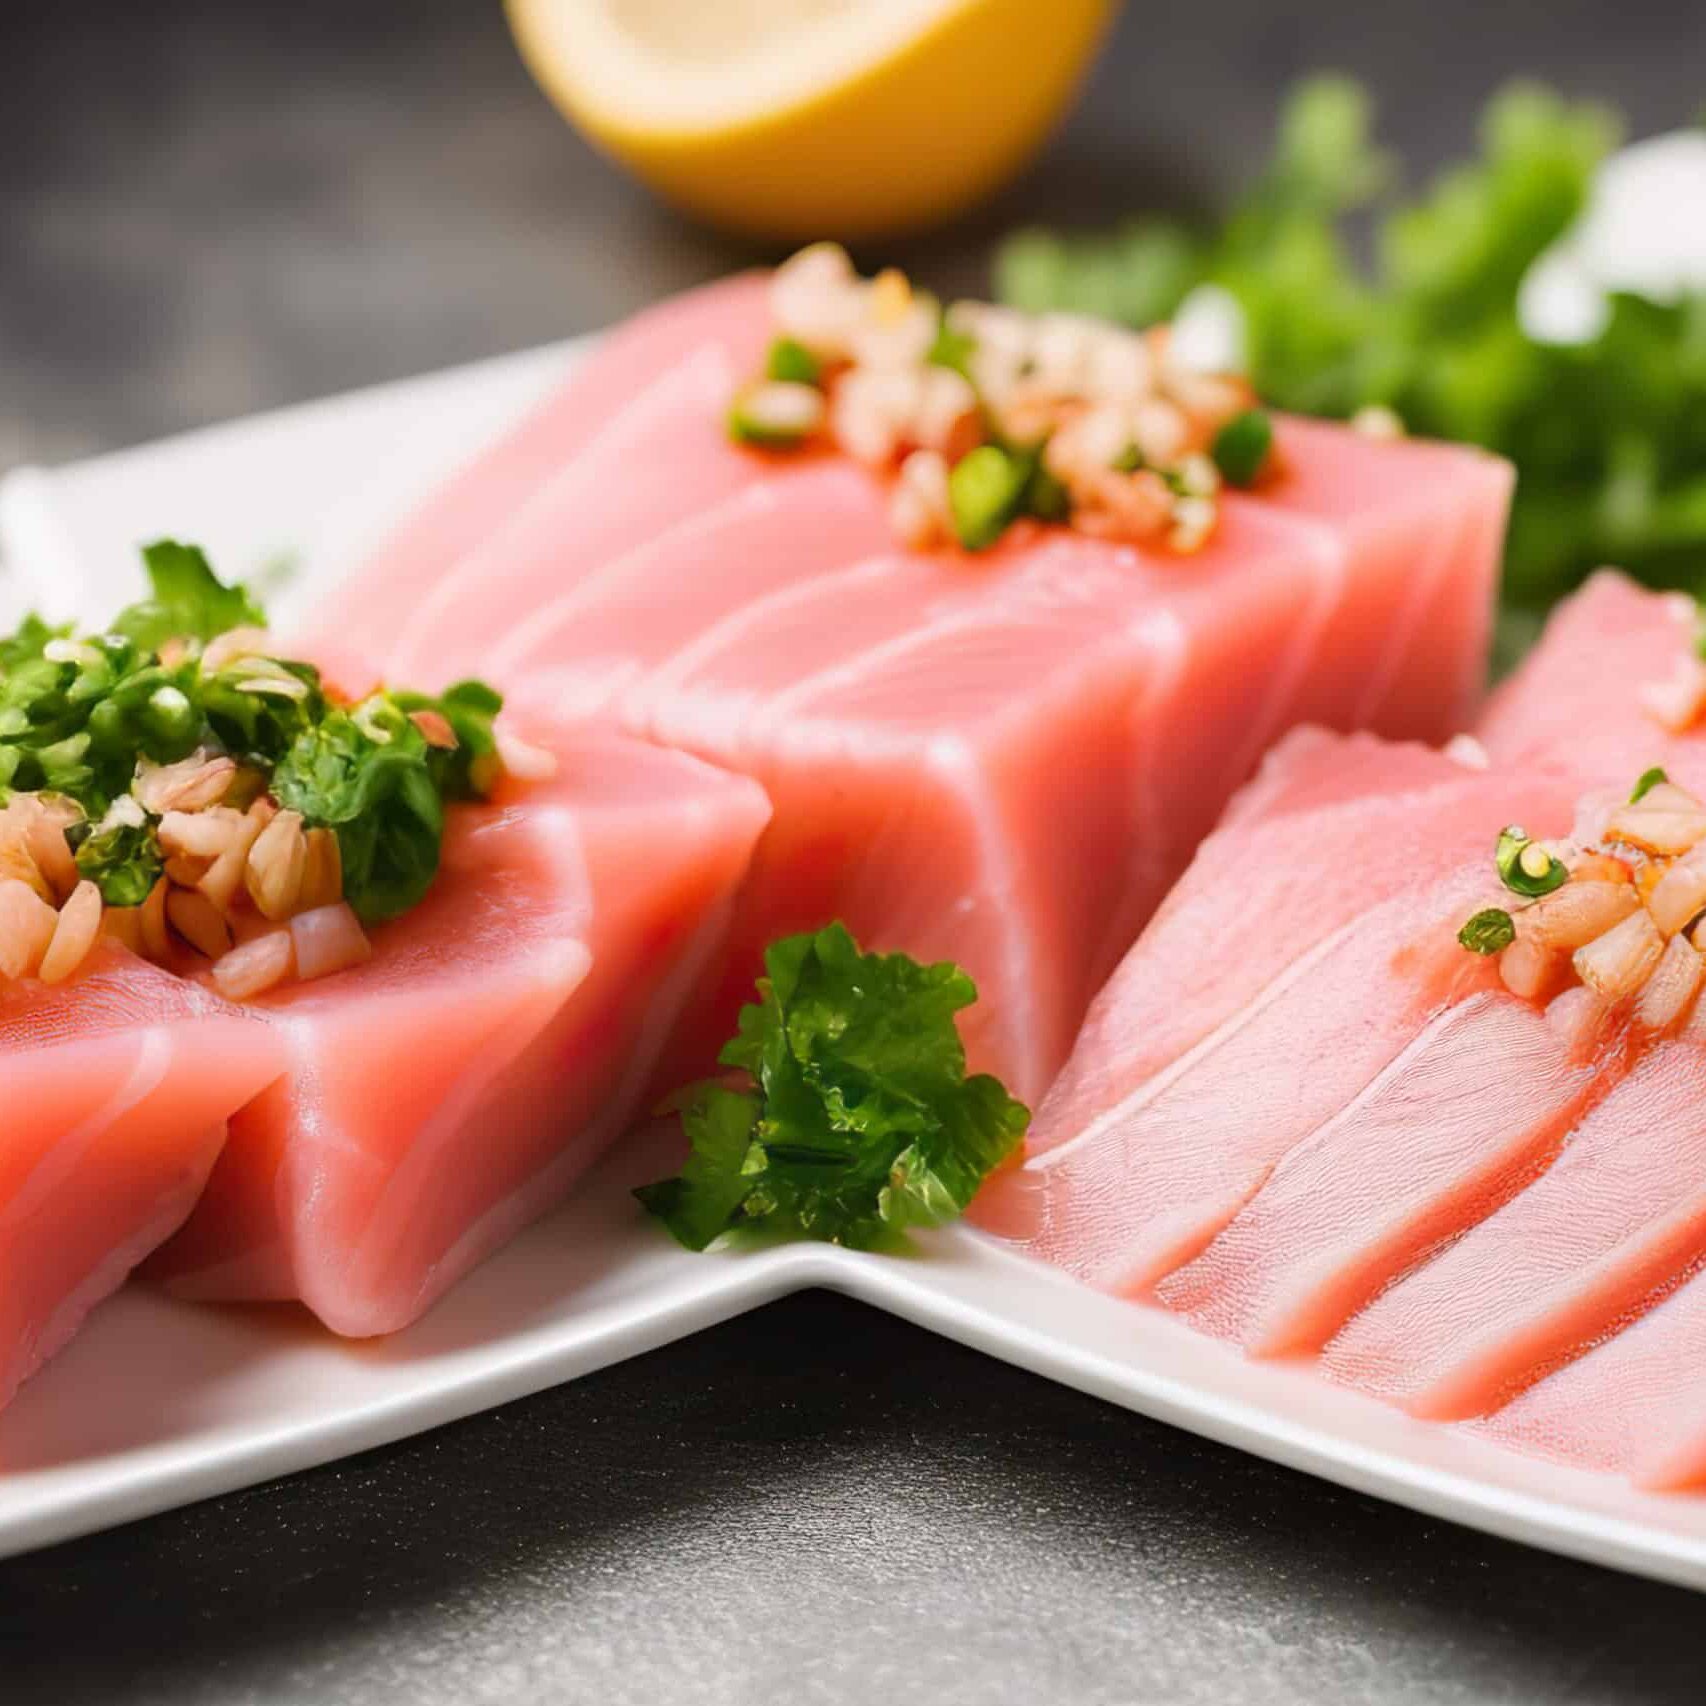 Tuna sashimi at a Japanese restaurant in Tokyo.